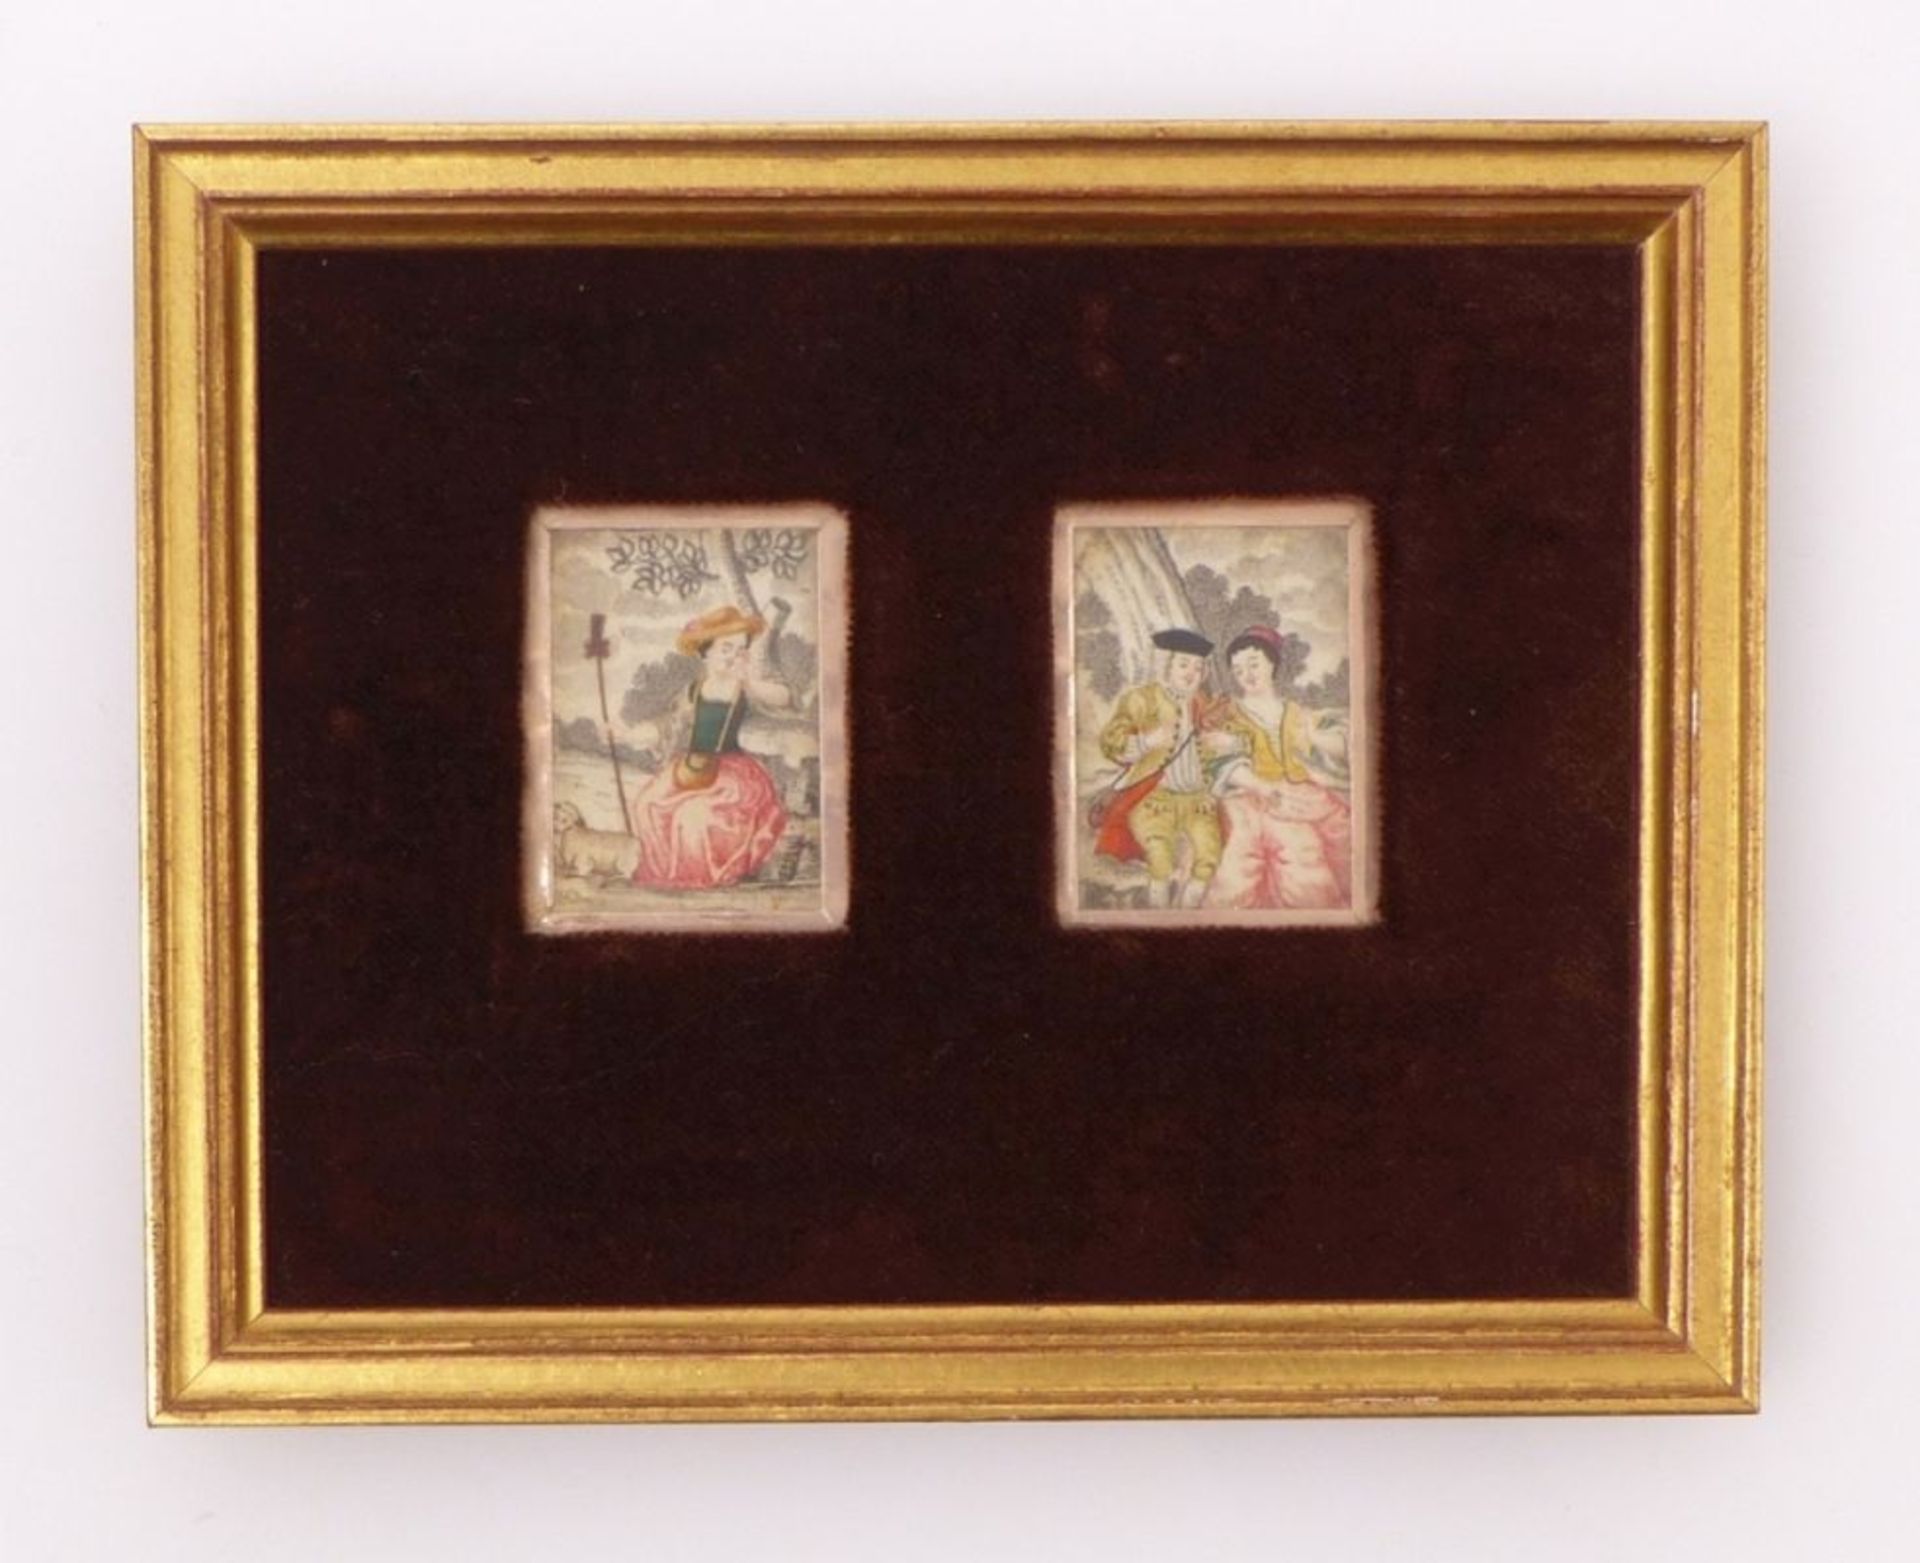 Zwei Schäferszenen en miniatureFrühes 18. Jh.Rechteckige Bildausschnitte mit Darstellung einer